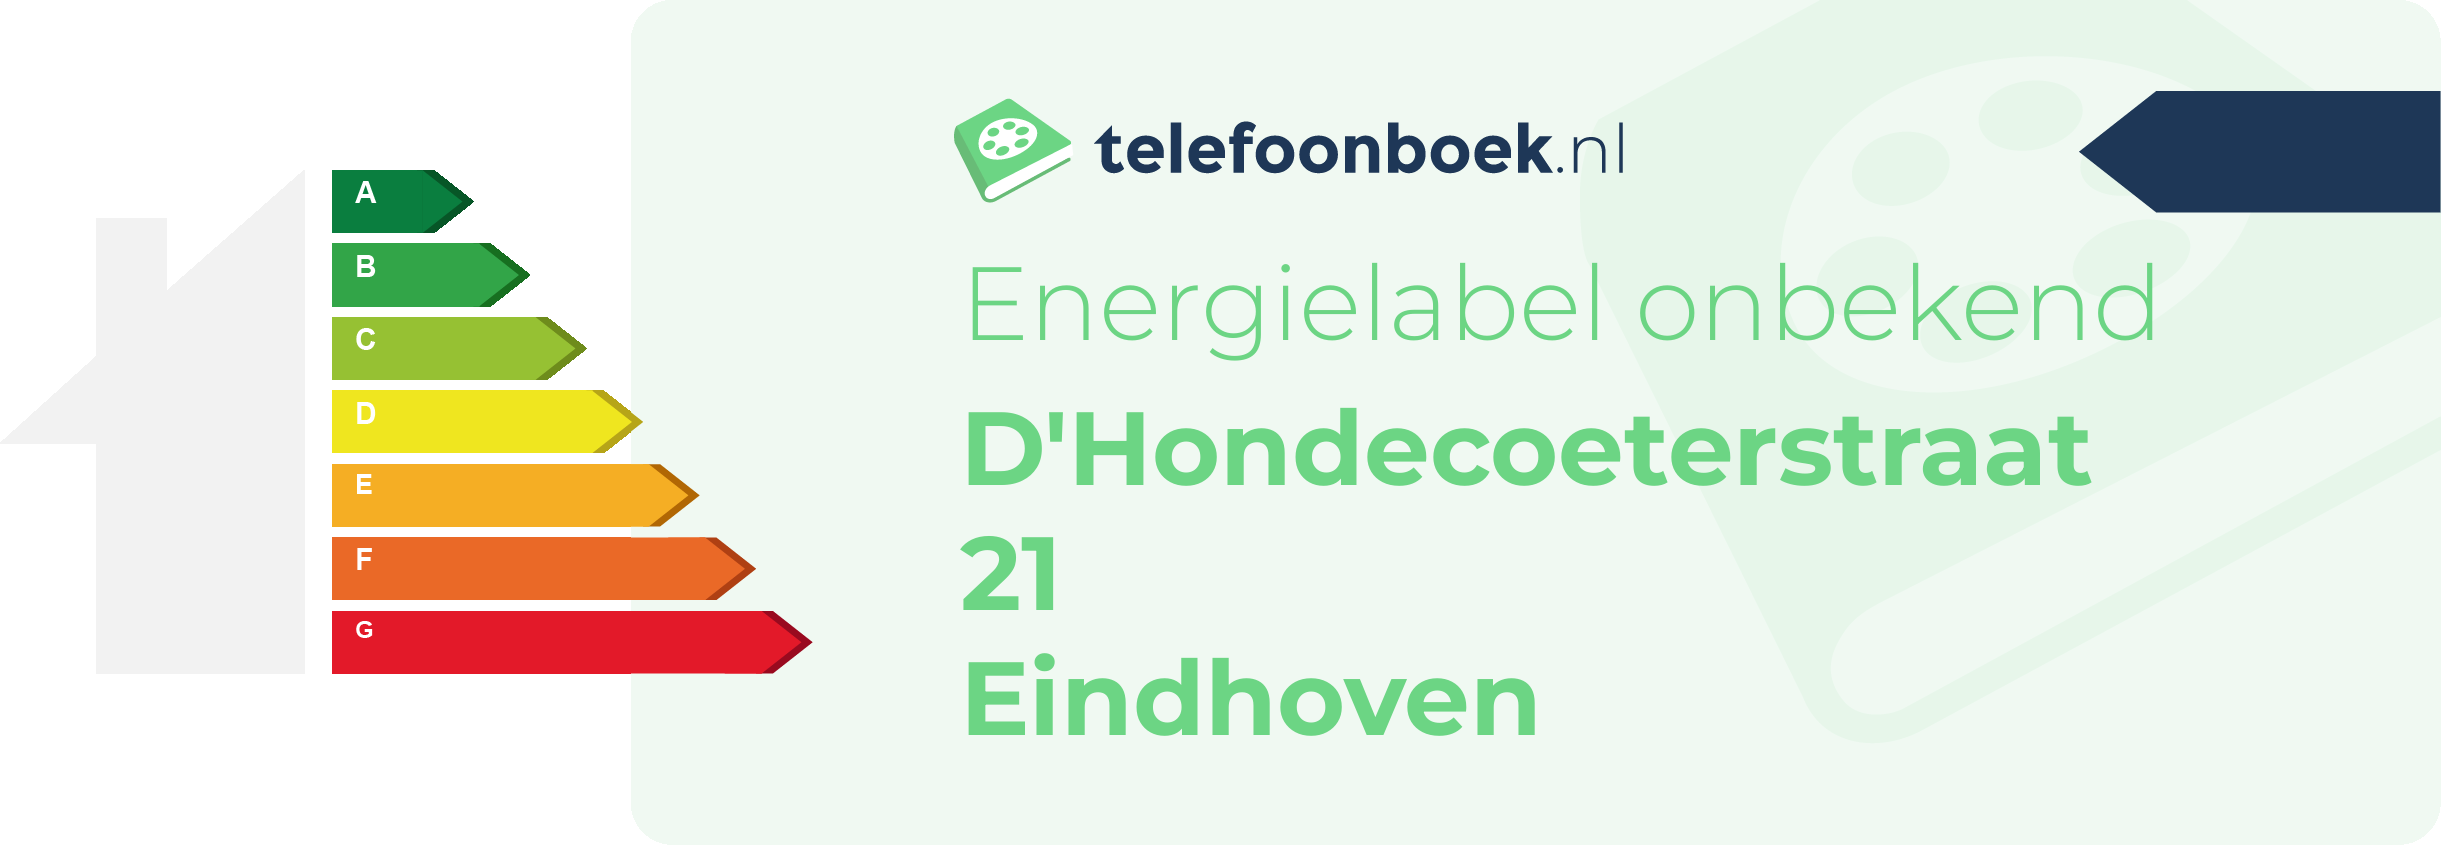 Energielabel D'Hondecoeterstraat 21 Eindhoven